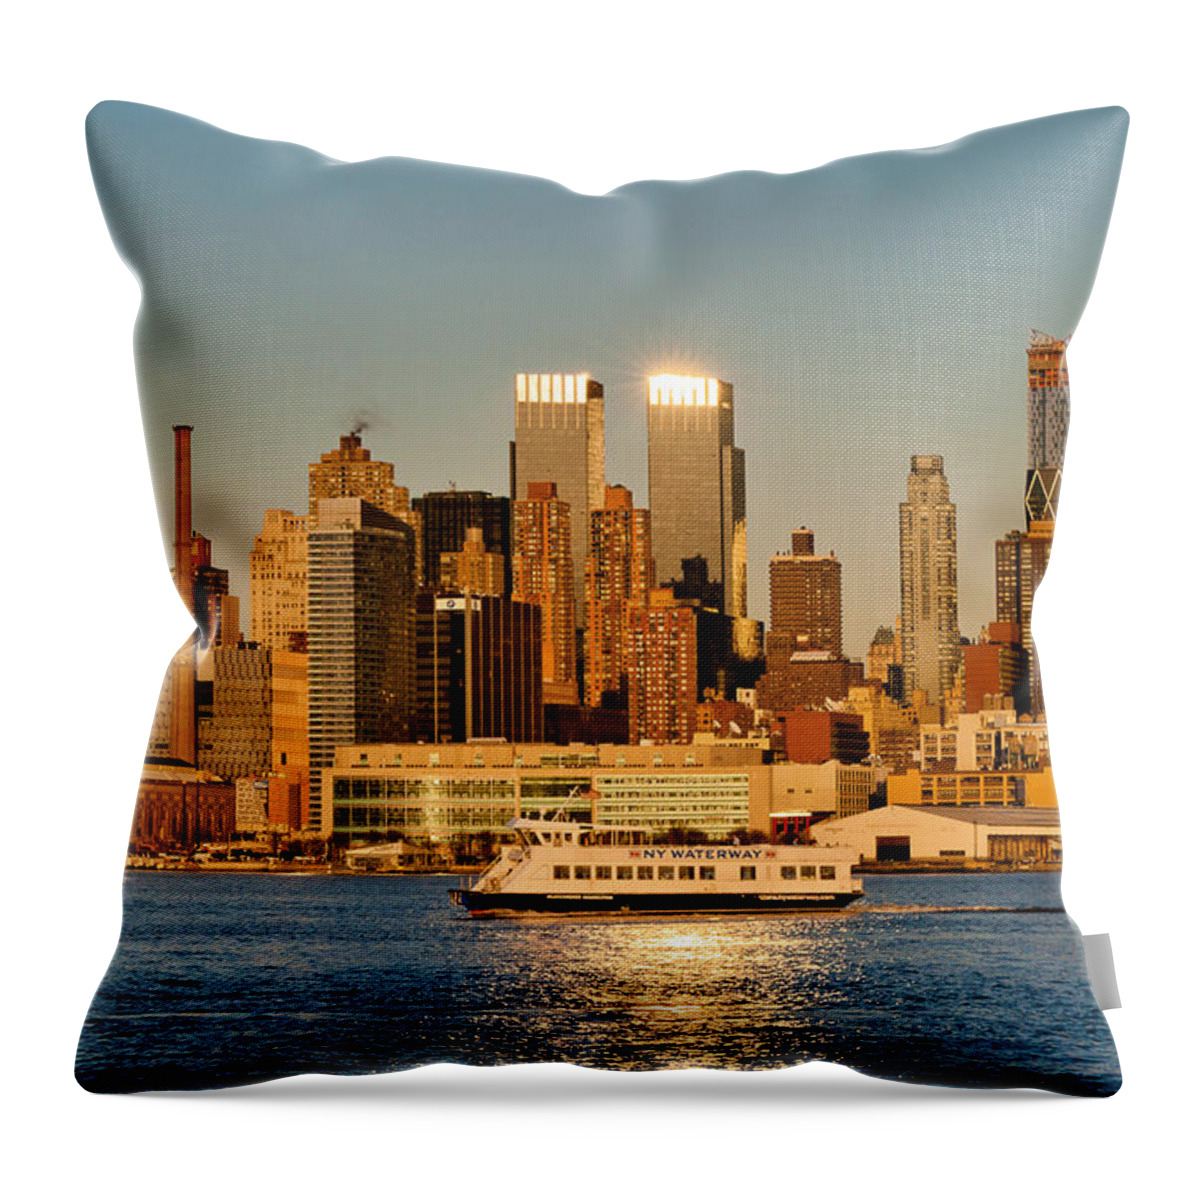 Best New York Skyline Photos Throw Pillow featuring the photograph New York Skyline Sunset by Mitchell R Grosky